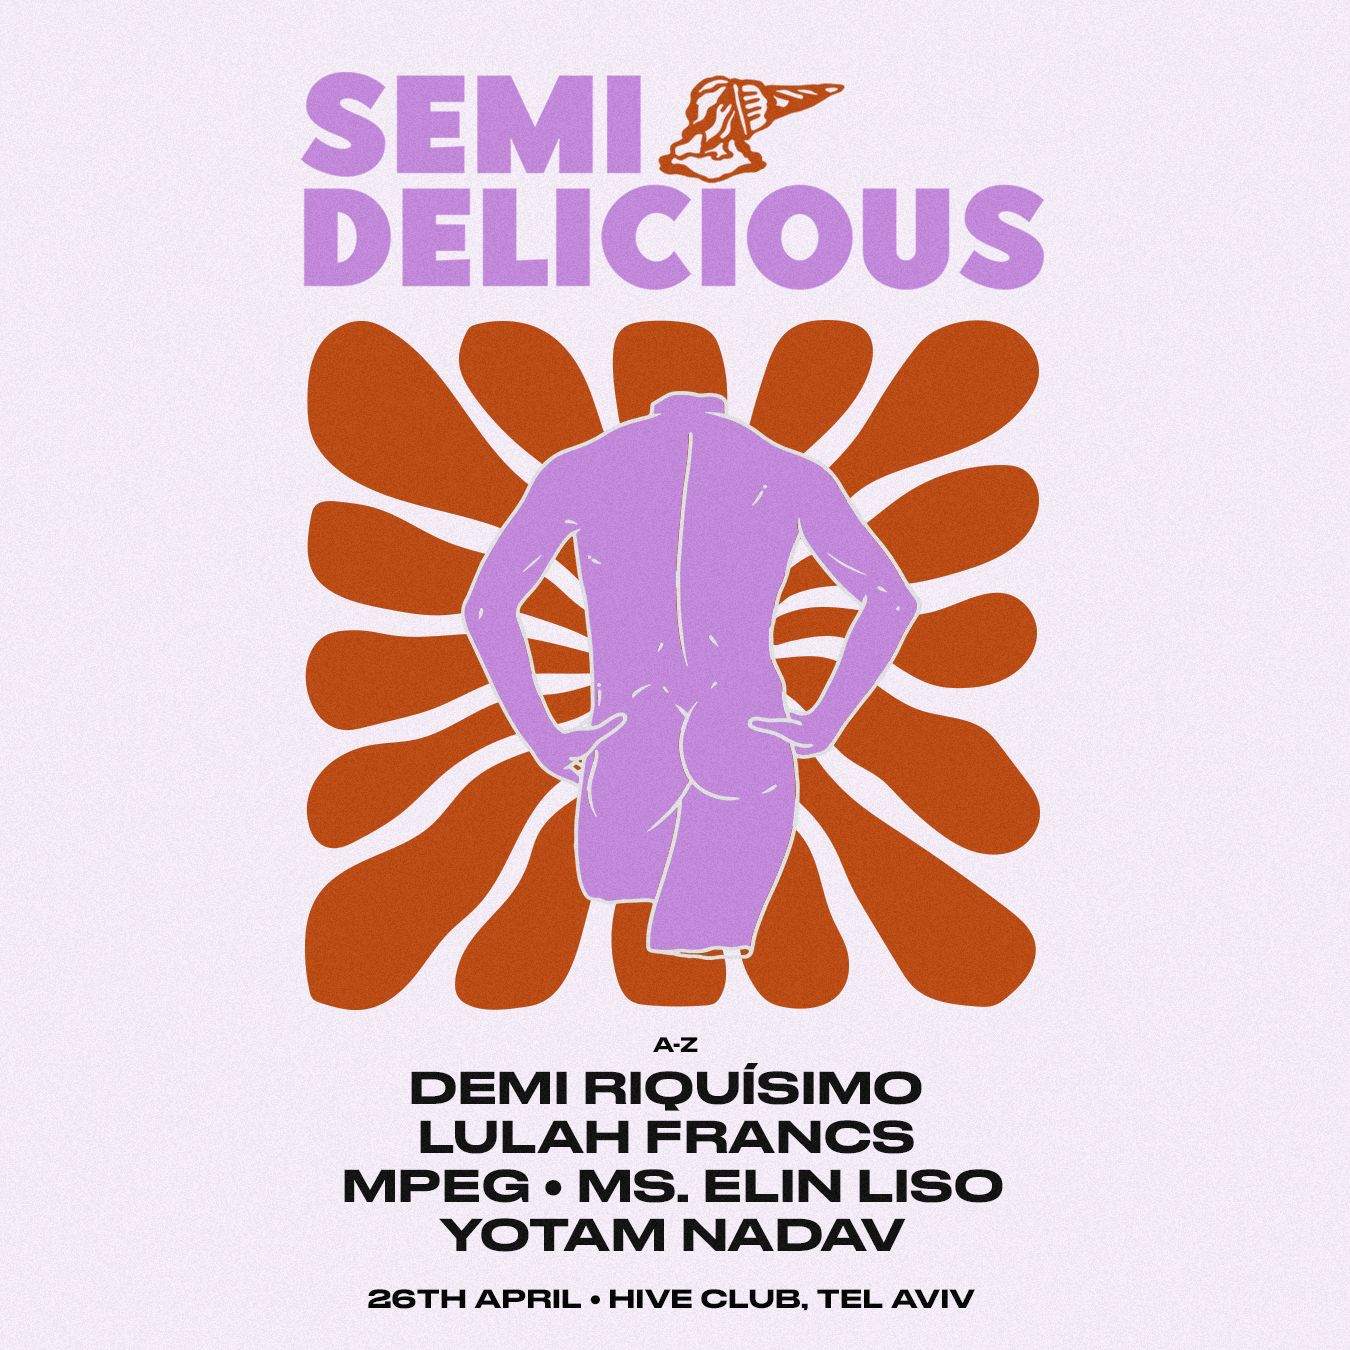 Semi Delicious Club - フライヤー表